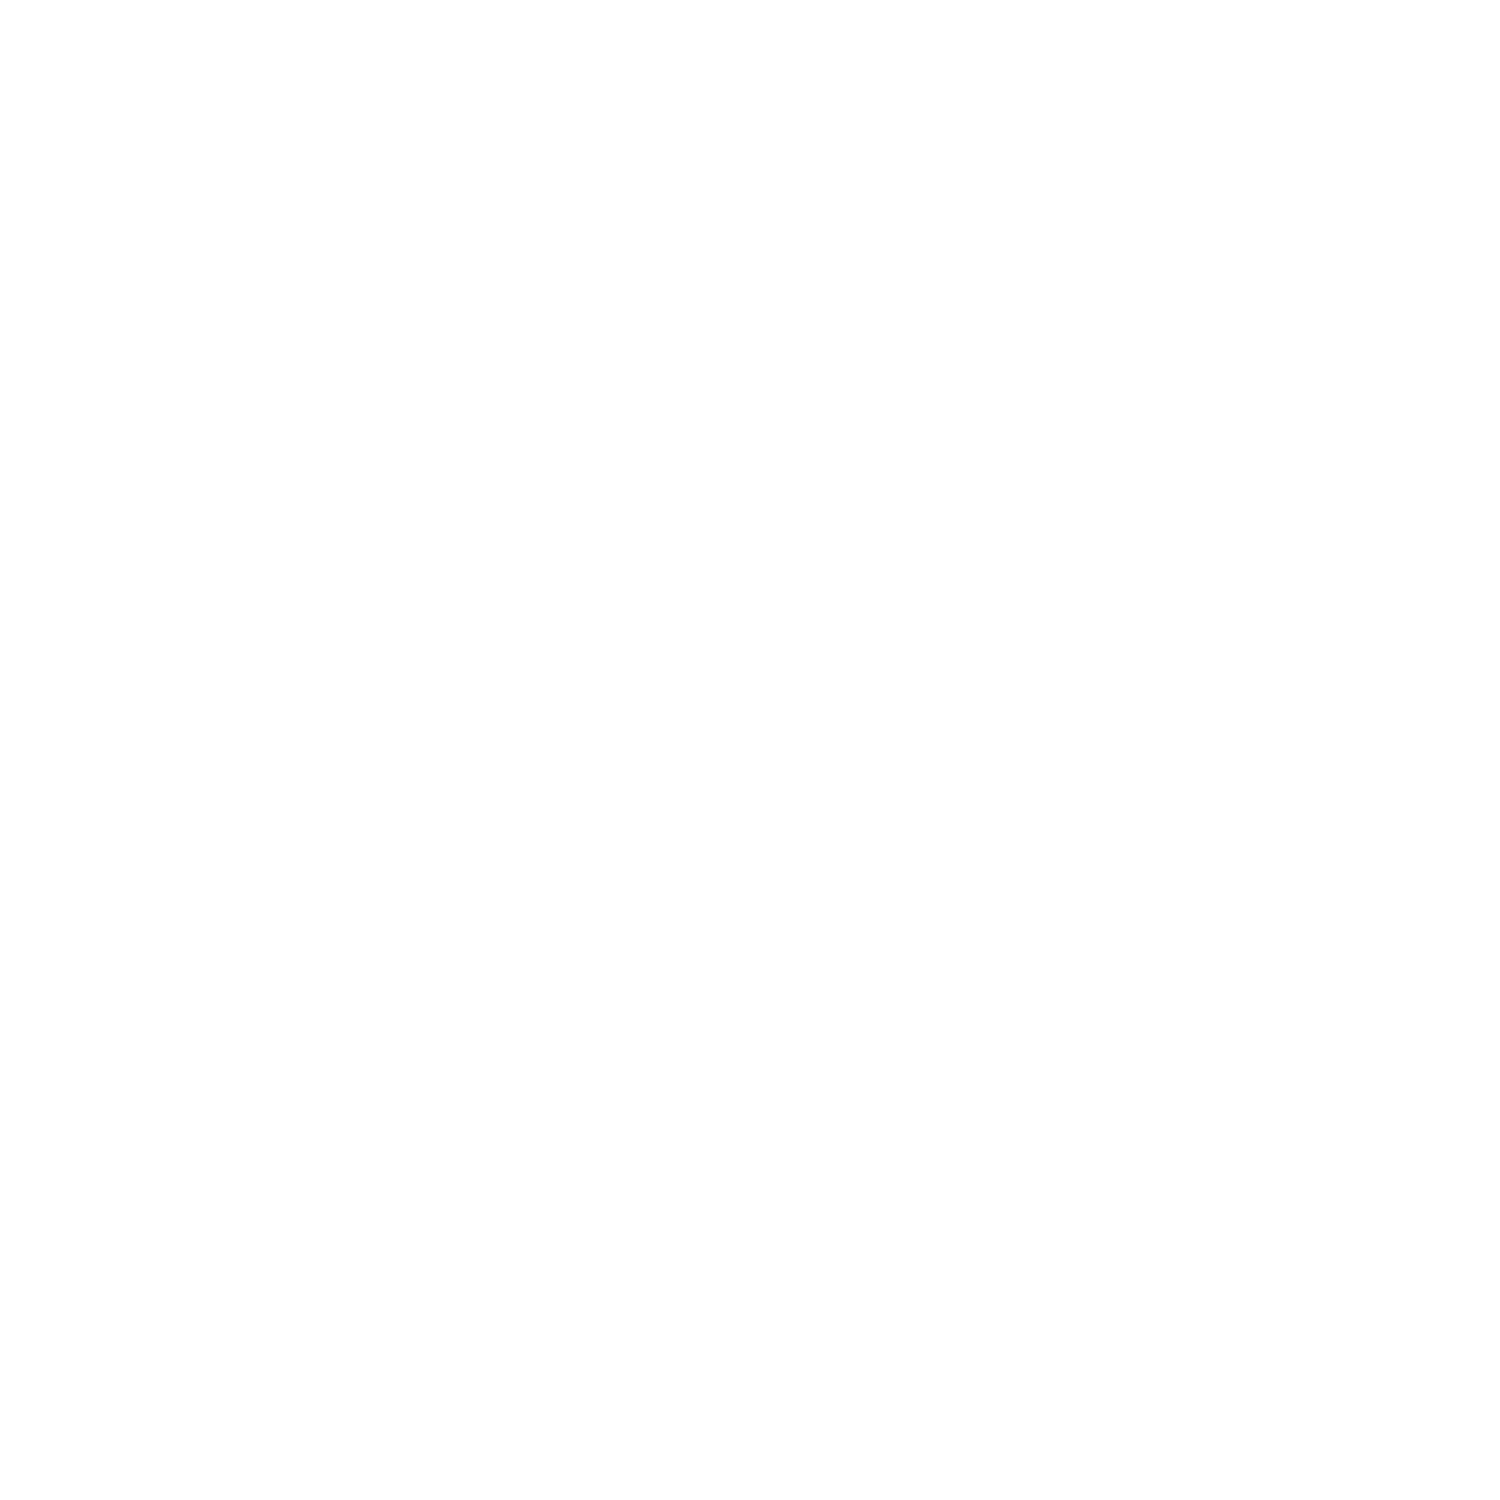 Moda Beauty Bar